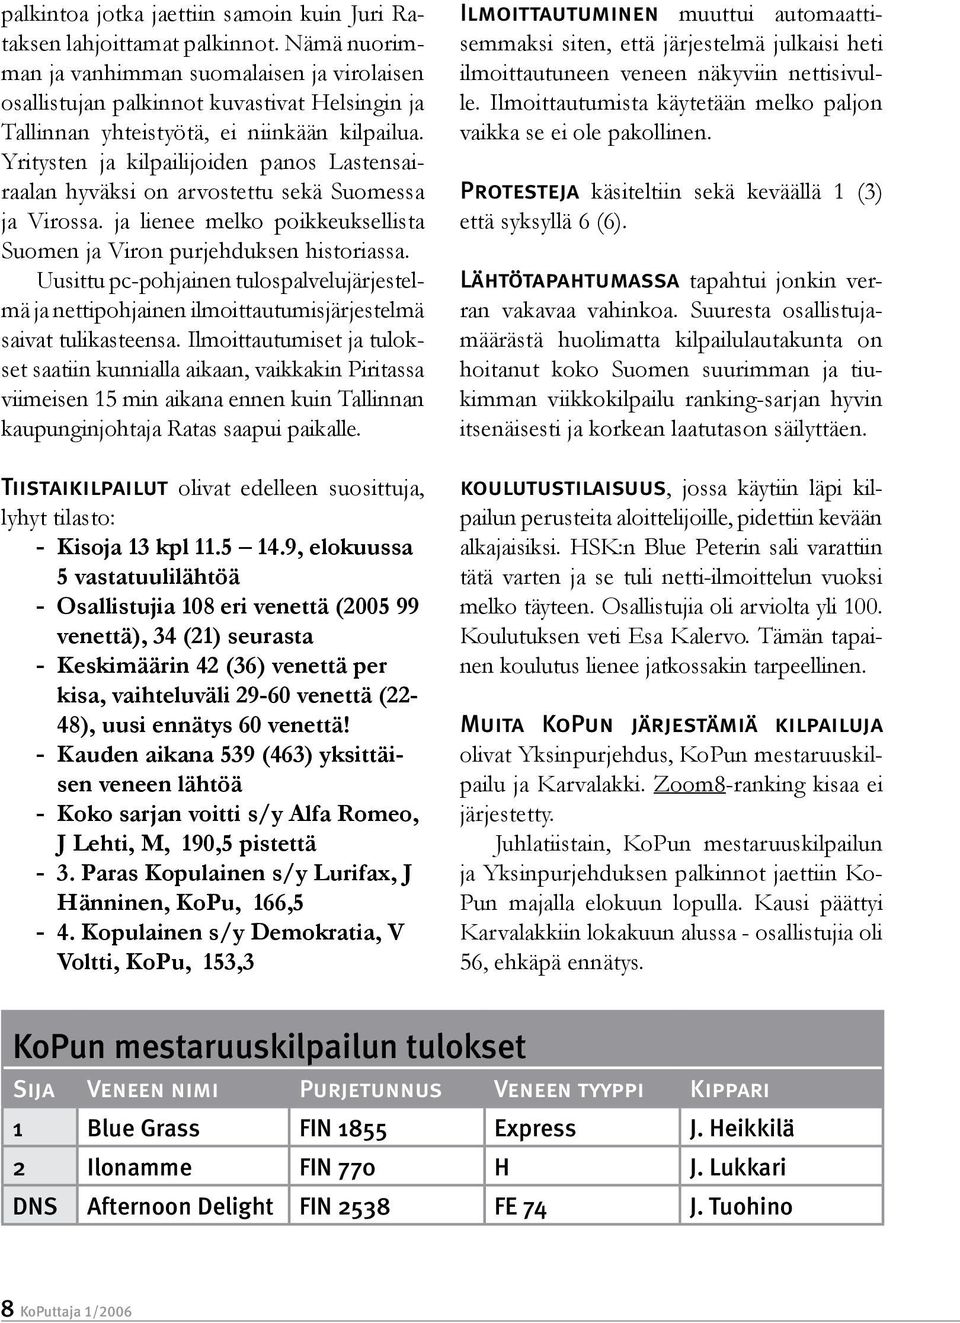 Yritysten ja kilpailijoiden panos Lastensairaalan hyväksi on arvostettu sekä Suomessa ja Virossa. ja lienee melko poikkeuksellista Suomen ja Viron purjehduksen historiassa.